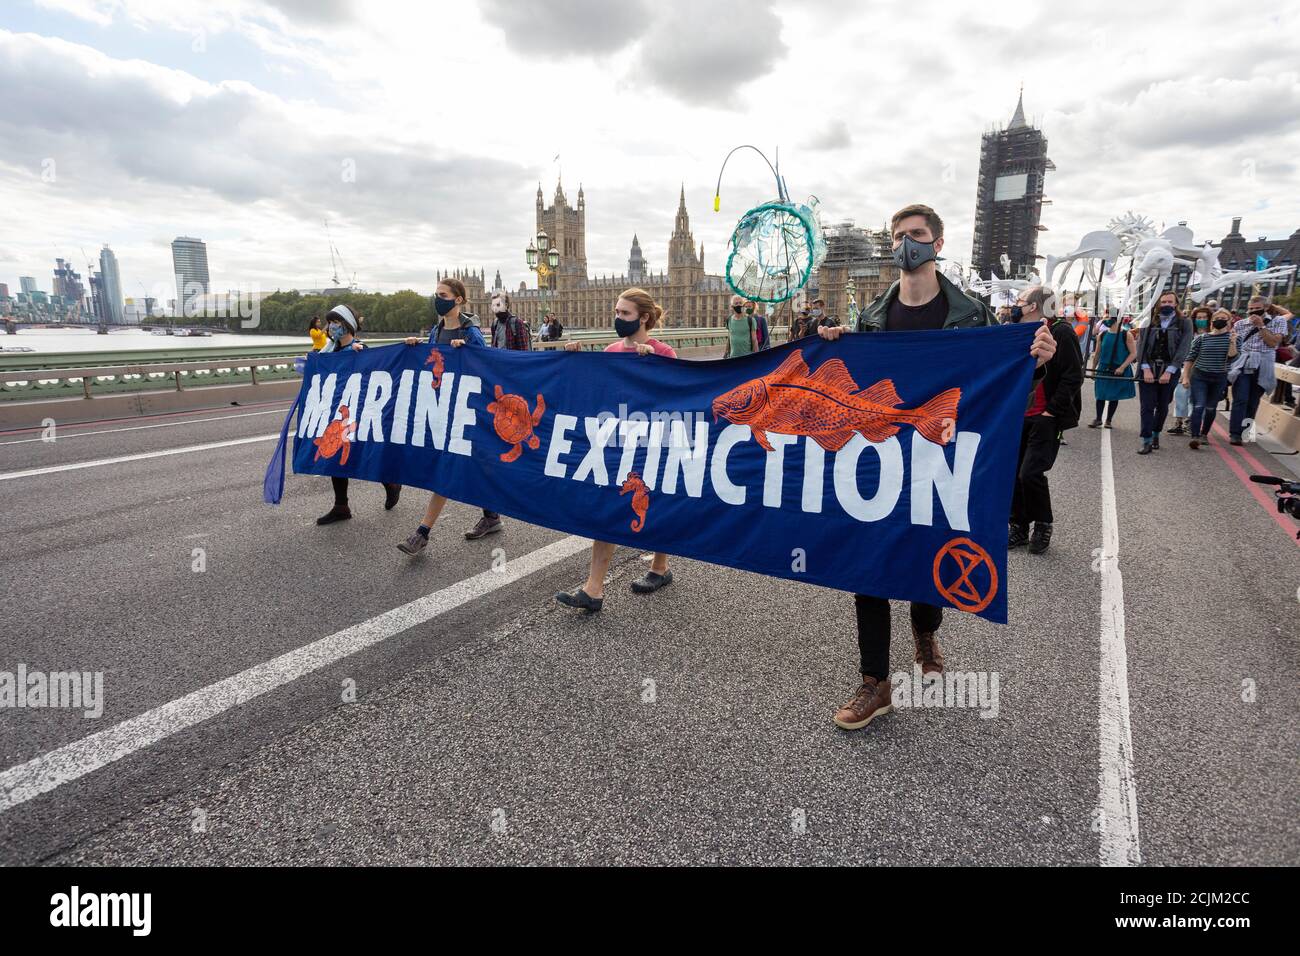 Manifestantes que portaban la bandera a través del Puente de Westminster durante la "marcha de extinción de la Marina", manifestación de la rebelión de extinción, Londres, 6 de septiembre de 2020 Foto de stock